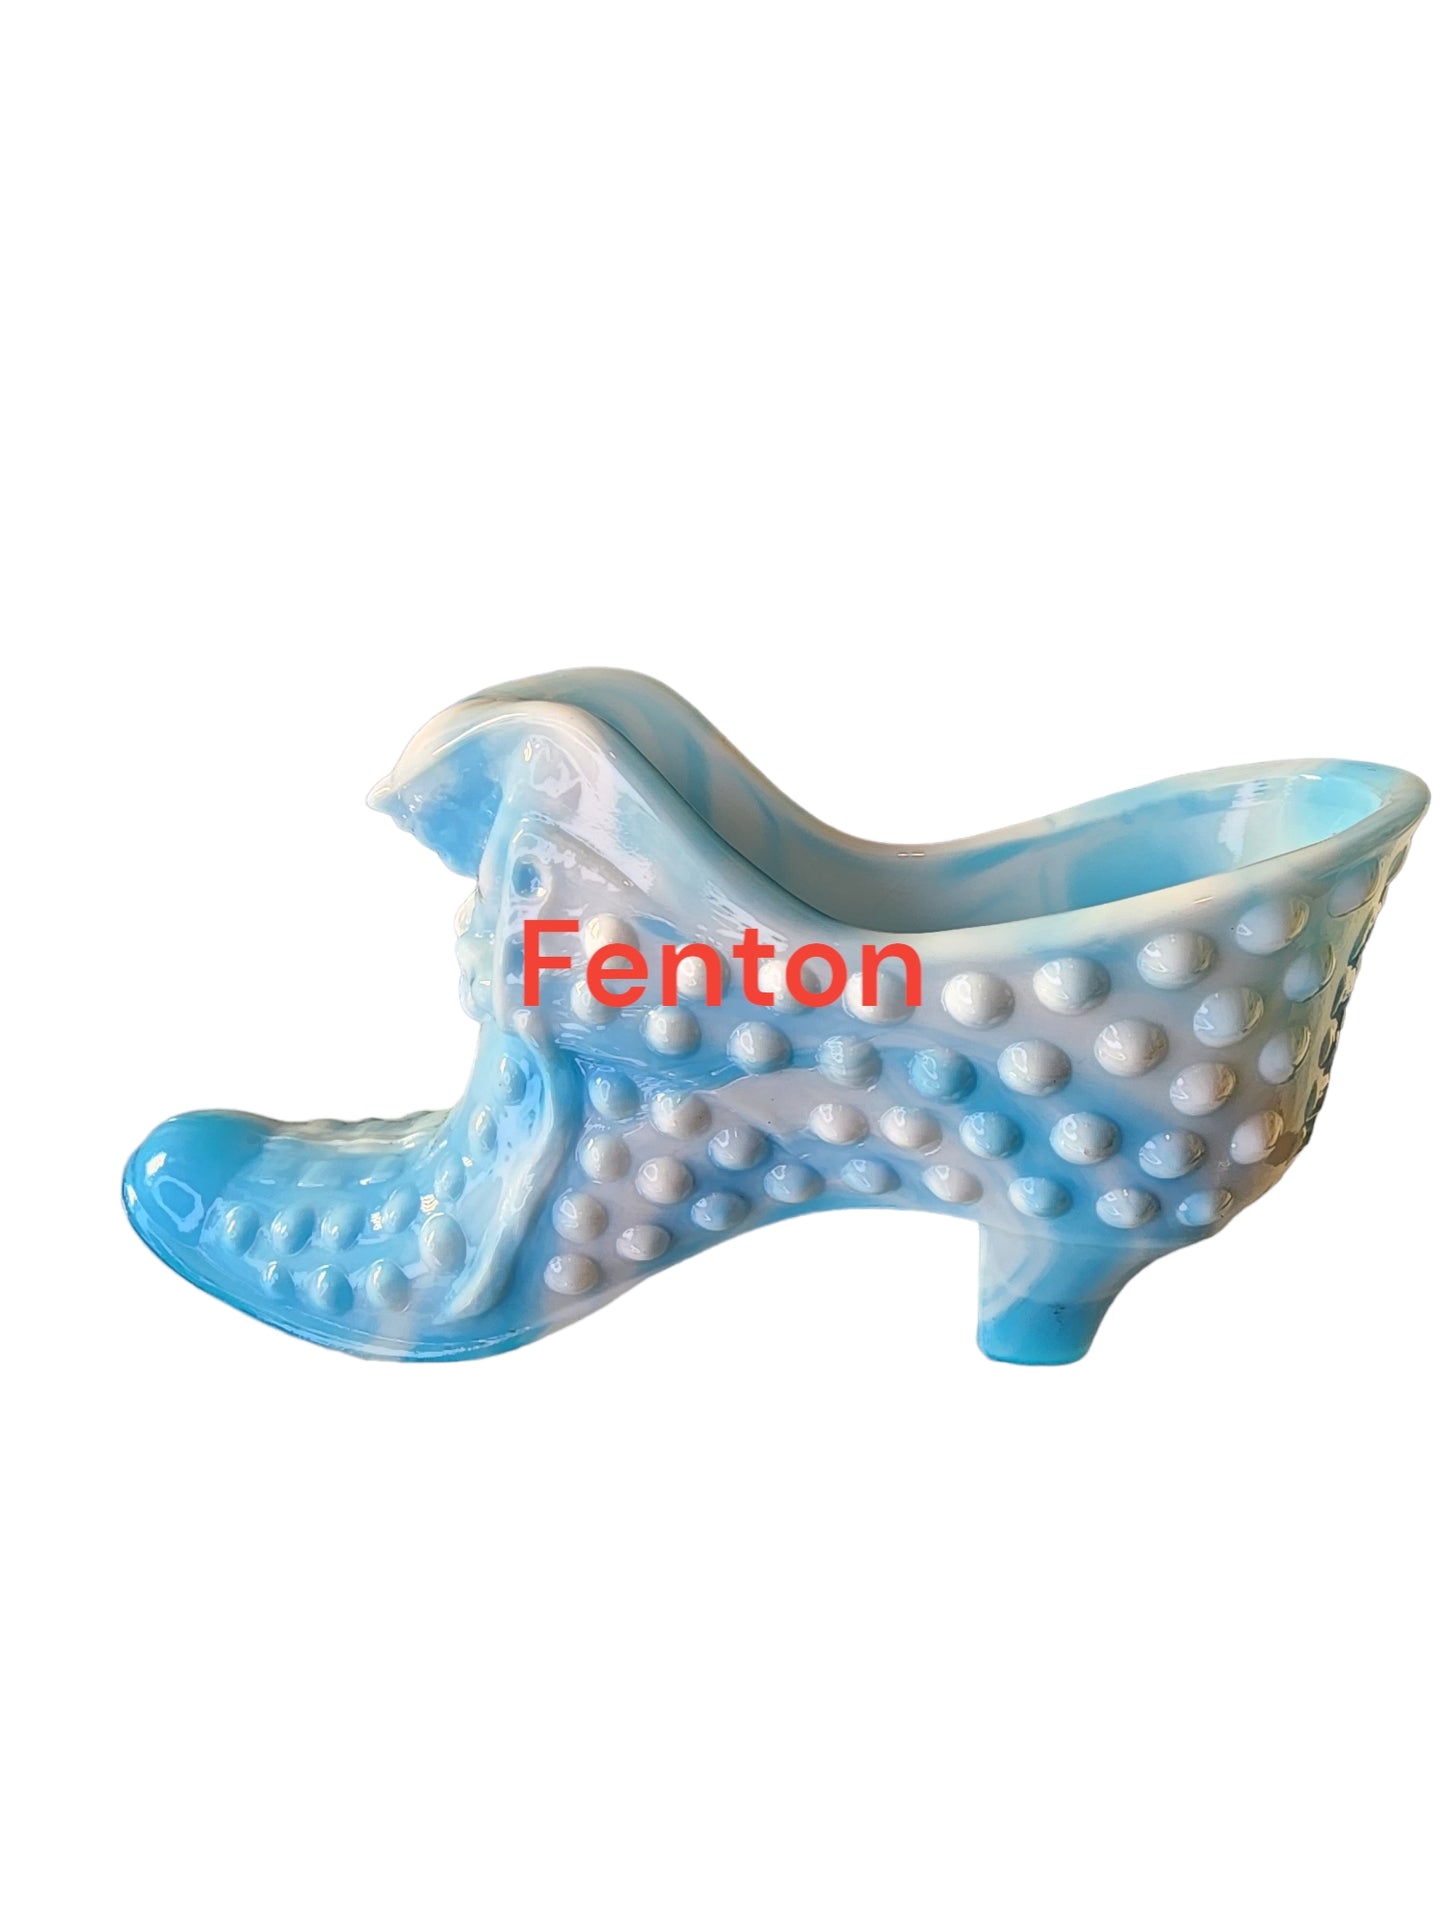 Fenton glass slag white blue slipper